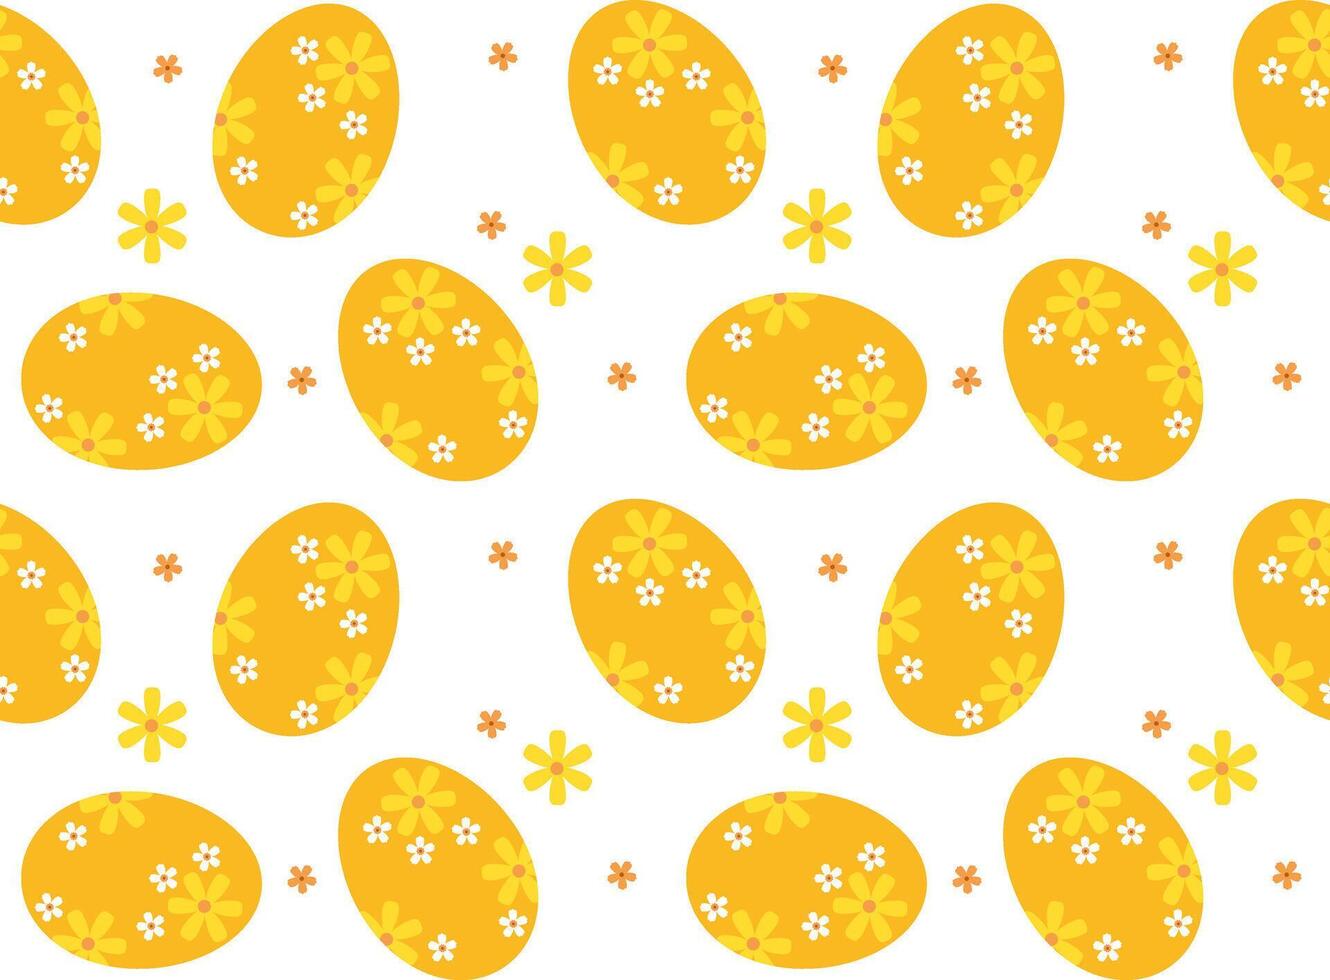 Pascua de Resurrección huevo sin costura modelo. Pascua de Resurrección antecedentes. vector ilustración